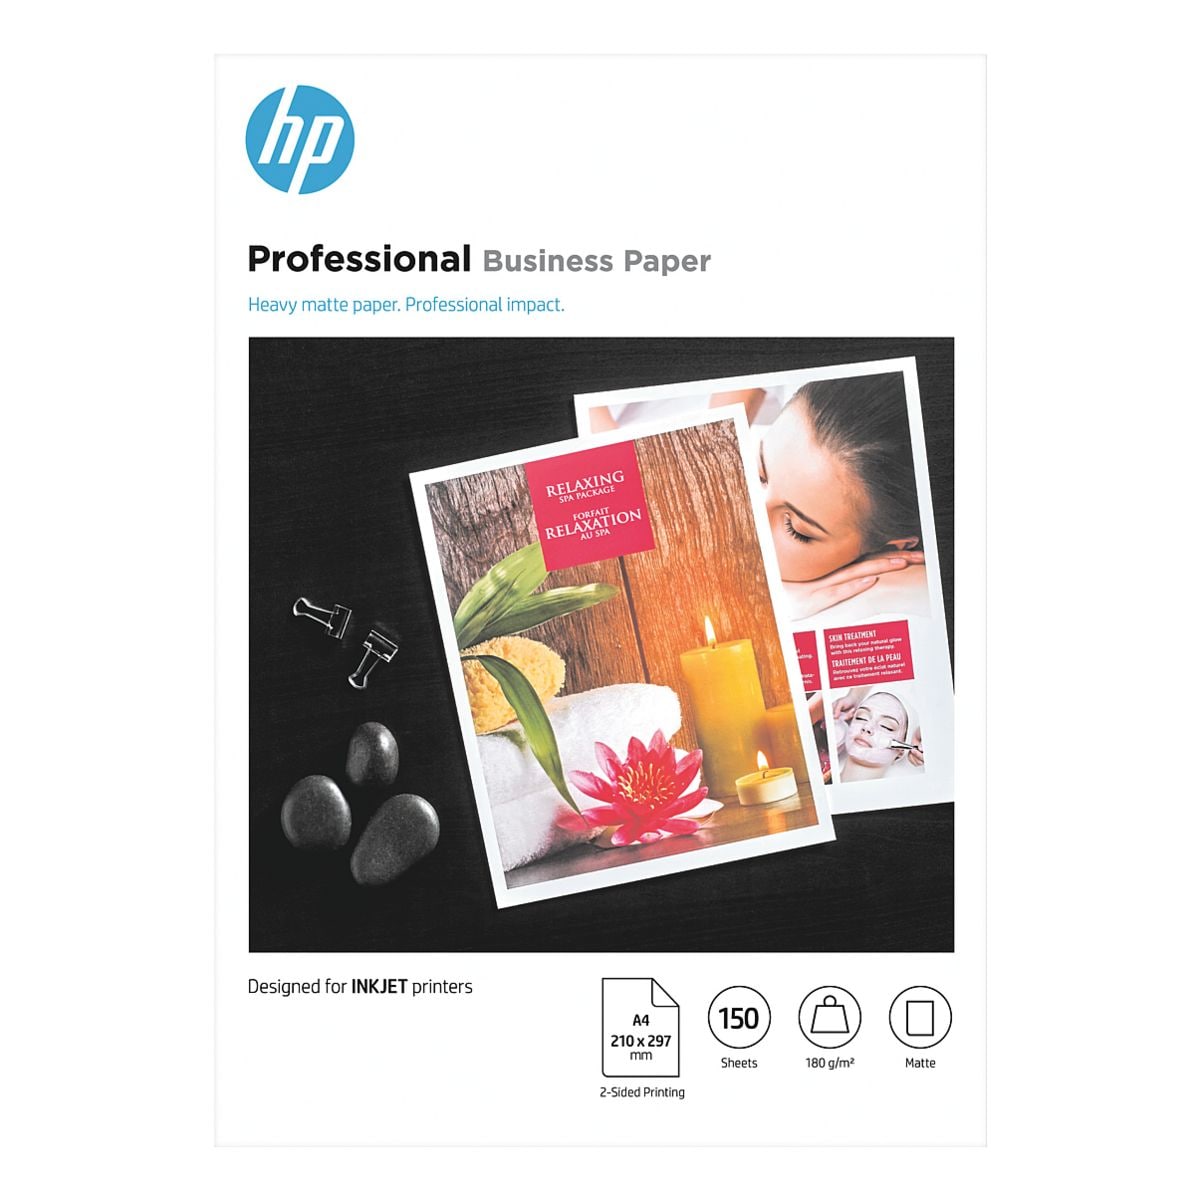 HP Fotopapier Professional Business Paper - A4 matt